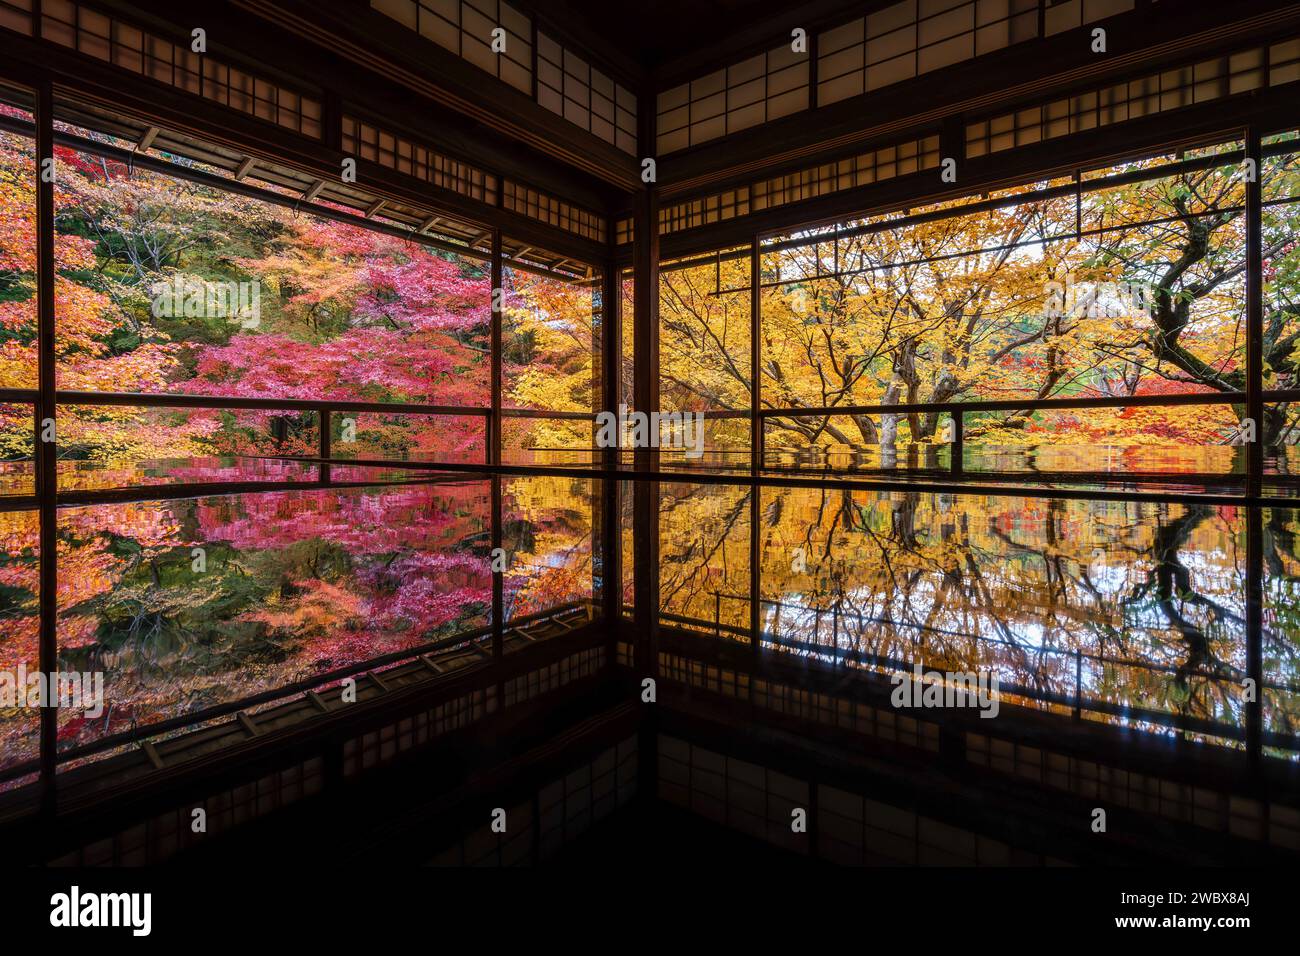 Autunno a Kyoto, Giappone, splendido giardino giapponese nel tempio buddista durante la stagione autunnale. Foto Stock